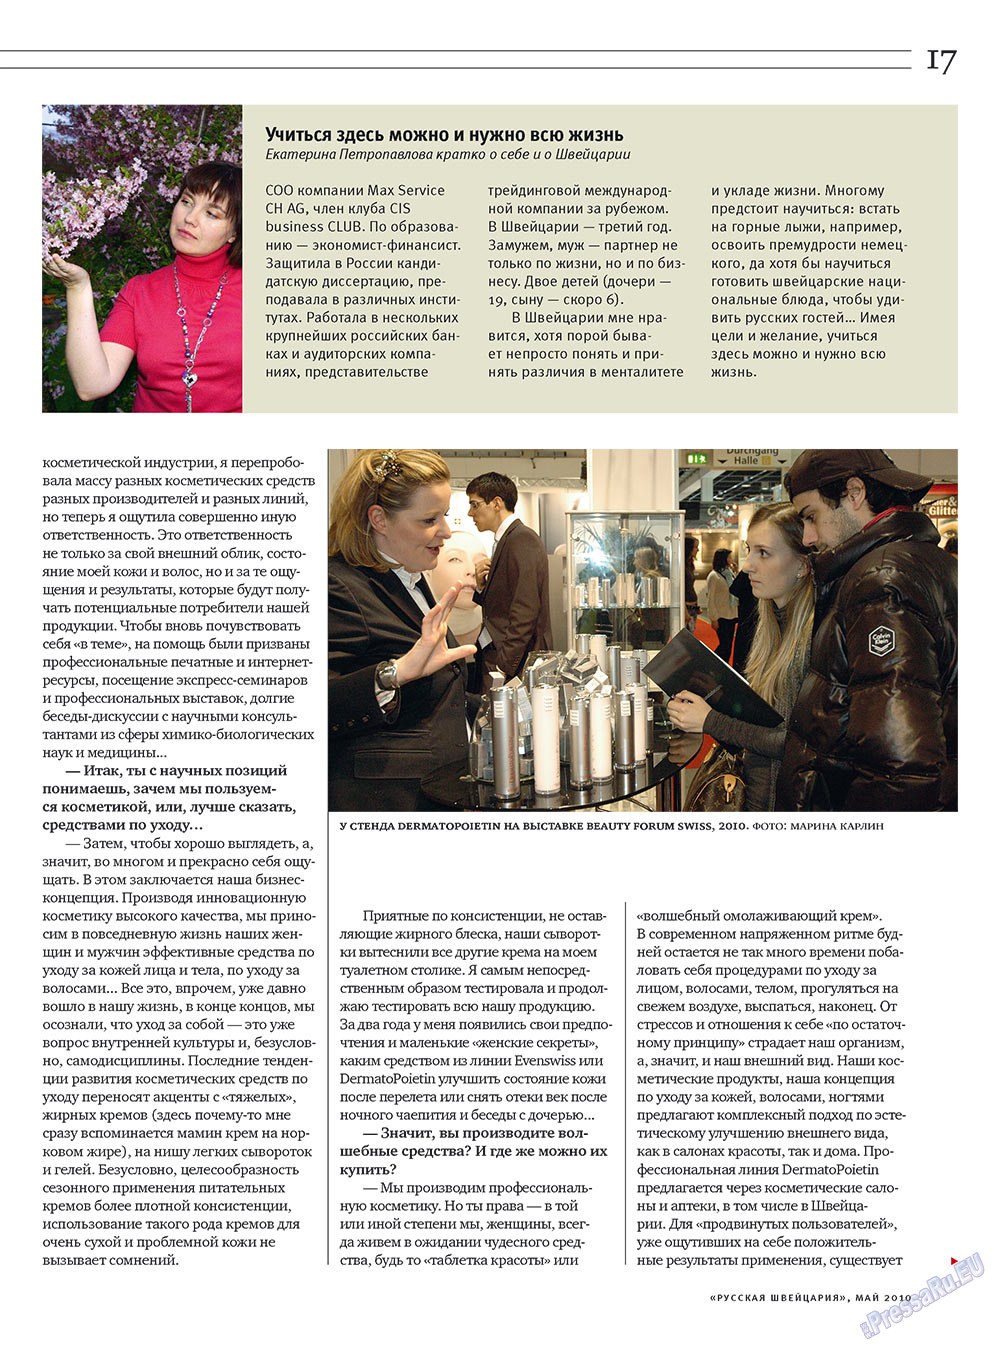 Русская Швейцария, журнал. 2010 №4 стр.17